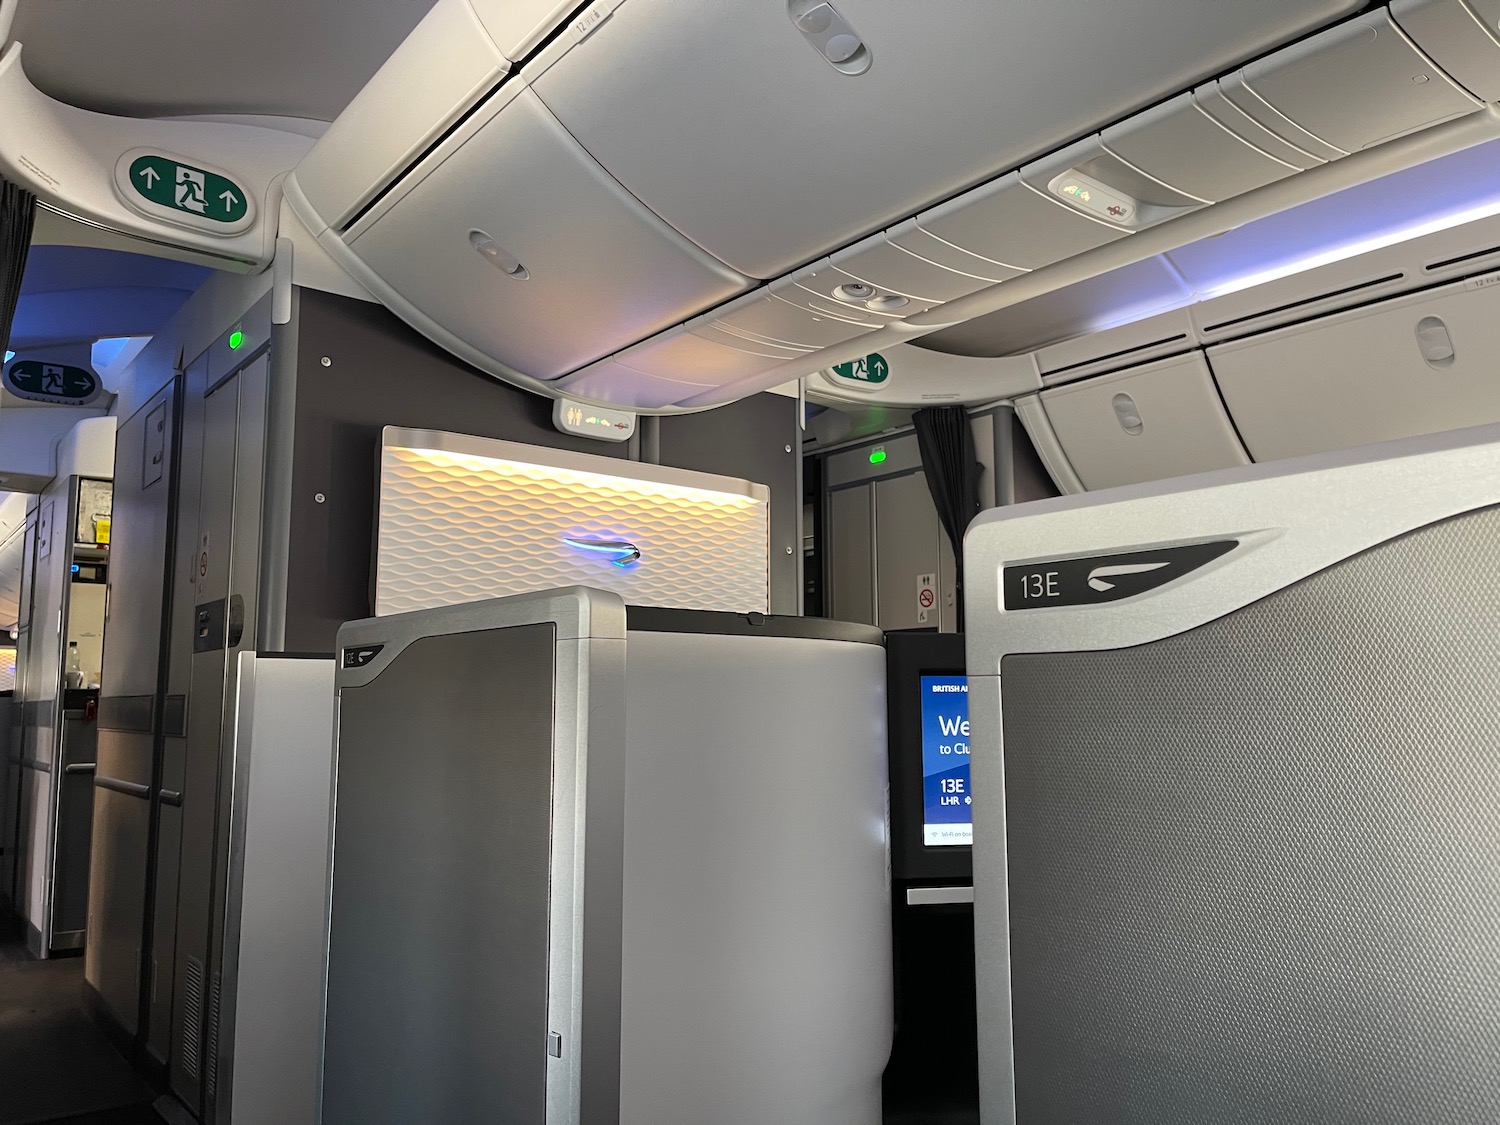 British Airways 787 10 Club World Suites 11 - Travel News, Insights & Resources.